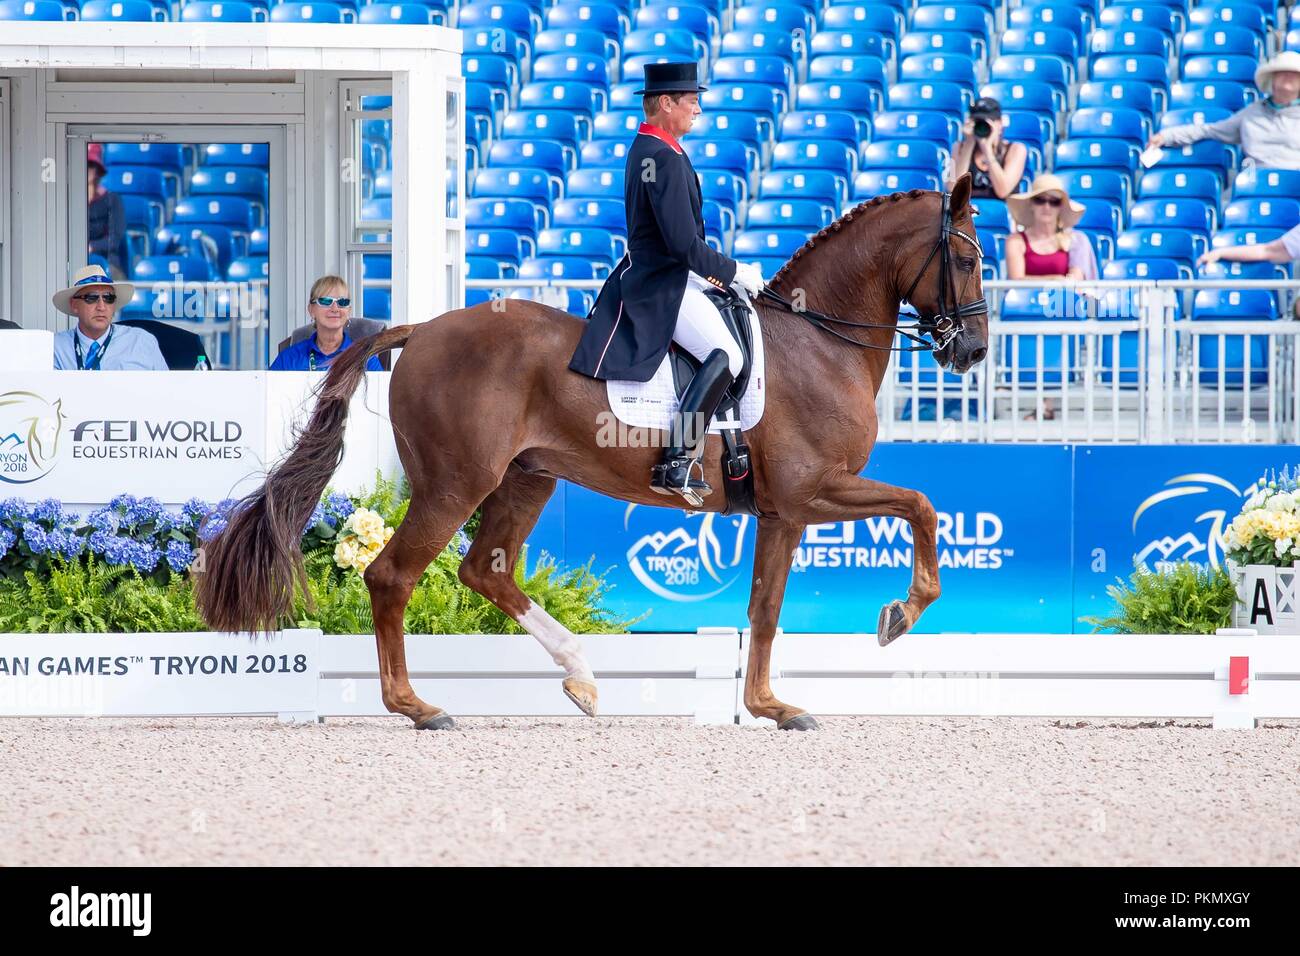 Emile Faurie. Dono di Maggio. Dressage.Grand Prix Special. Day 4. World Equestrian Games. WEG 2018 Tryon. North Carolina. USA. 14/09/2018. Stock Photo